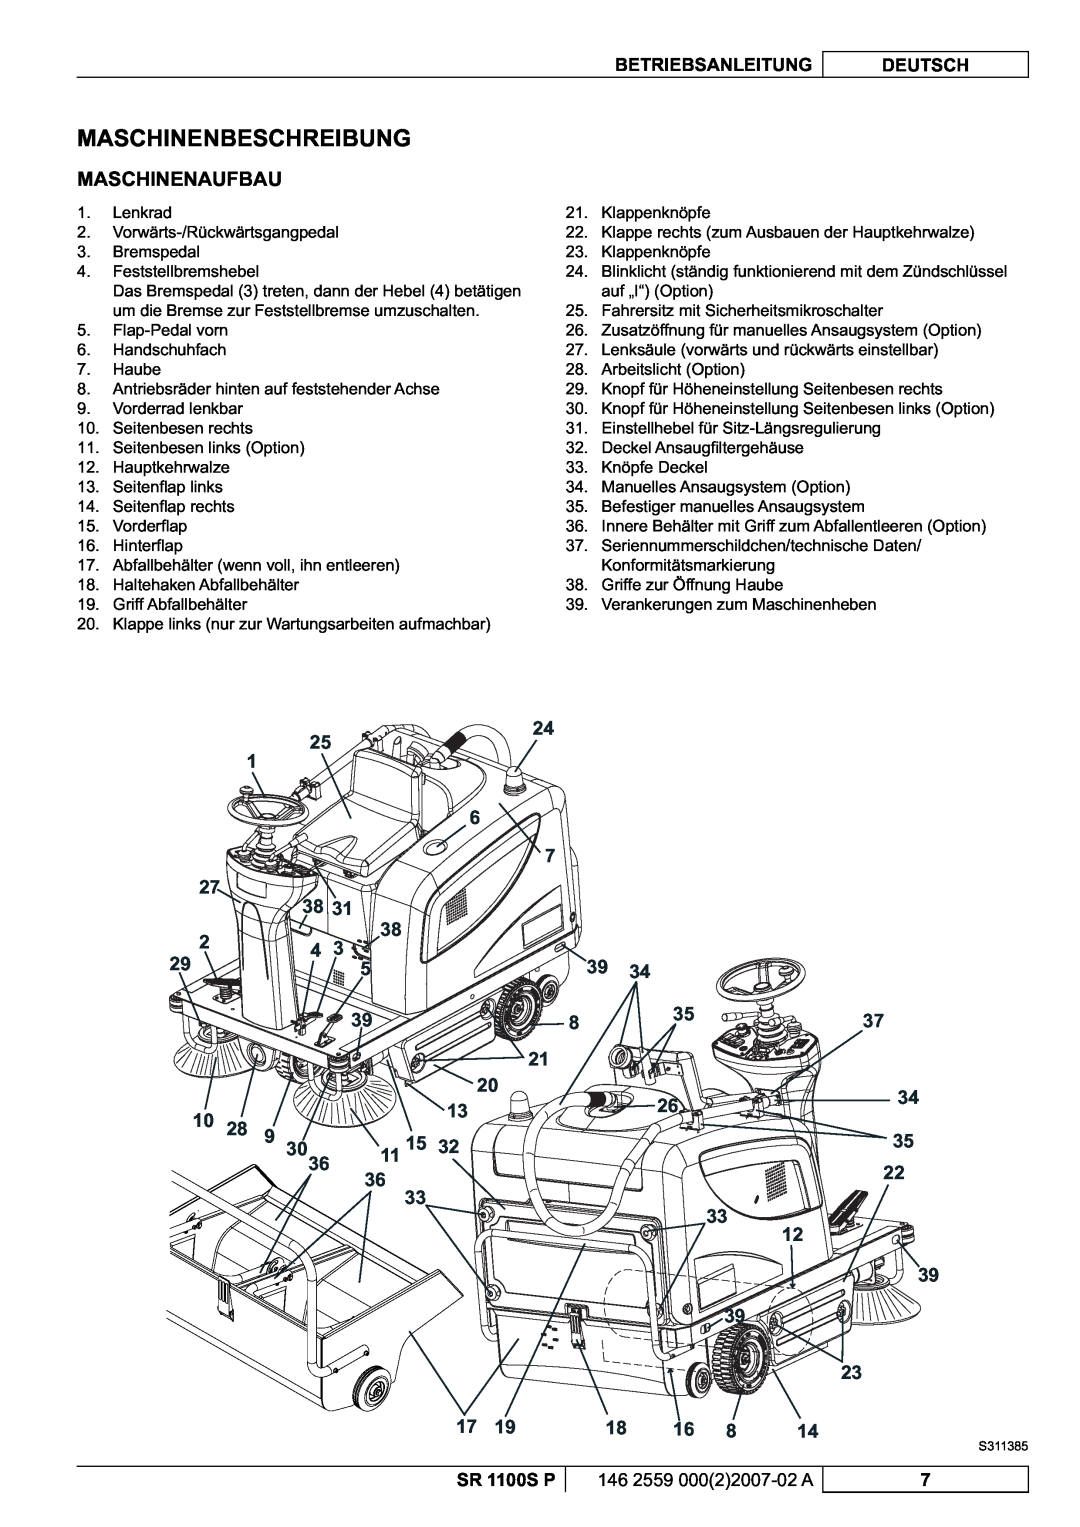 Nilfisk-Advance America SR 1100S manuel dutilisation Maschinenbeschreibung, Maschinenaufbau, 39 39 23 